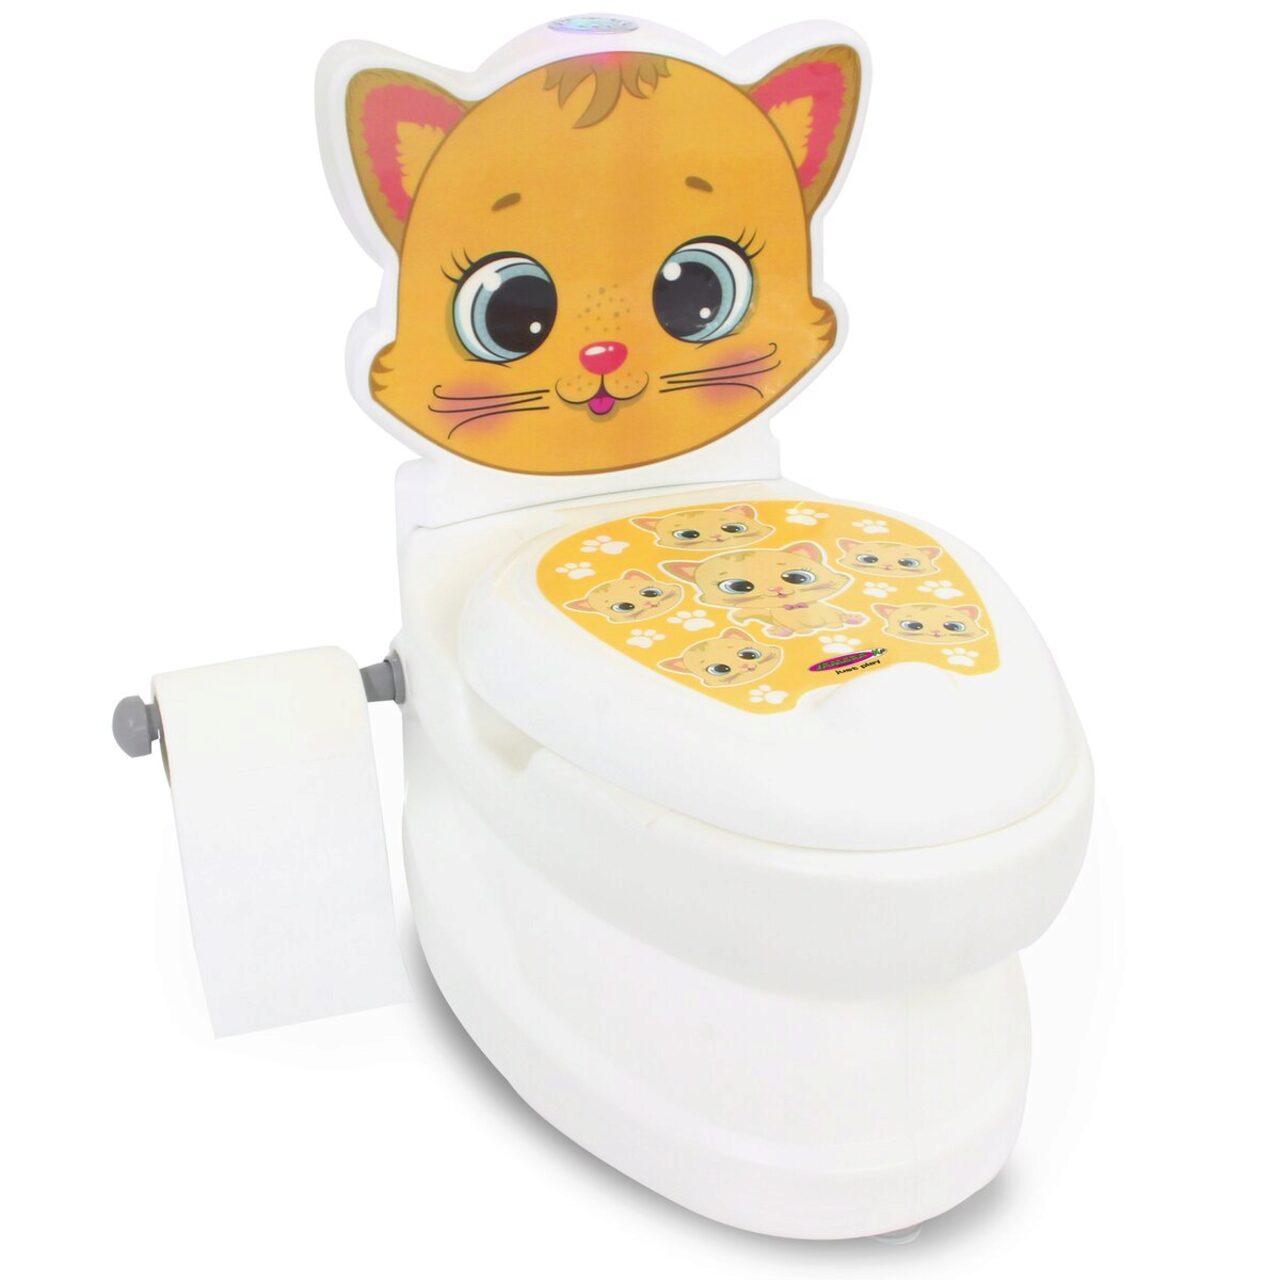 JAMARA 460955 Meine kleine Toilette Katze mit Spülsound und  Toilettenpapierhalter